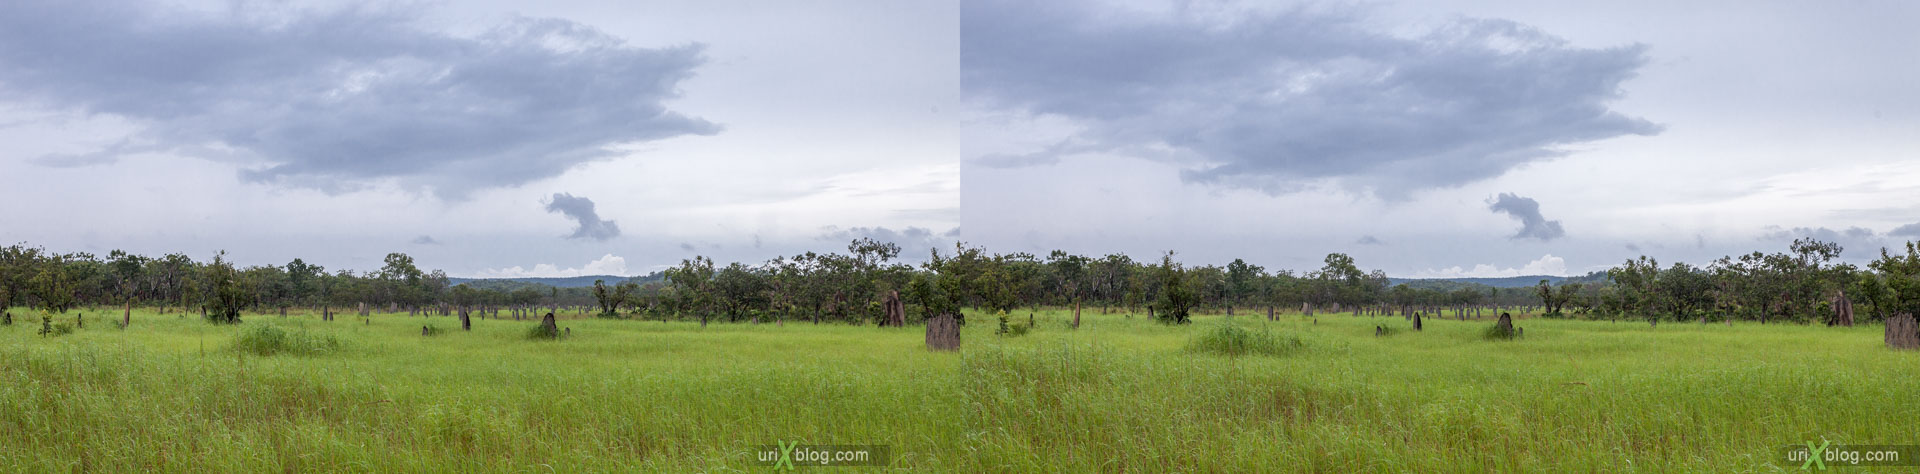 термитники, Litchfield National Park, Северная территория, Австралия, 3D, перекрёстная стереопара, стерео, стереопара, 2011